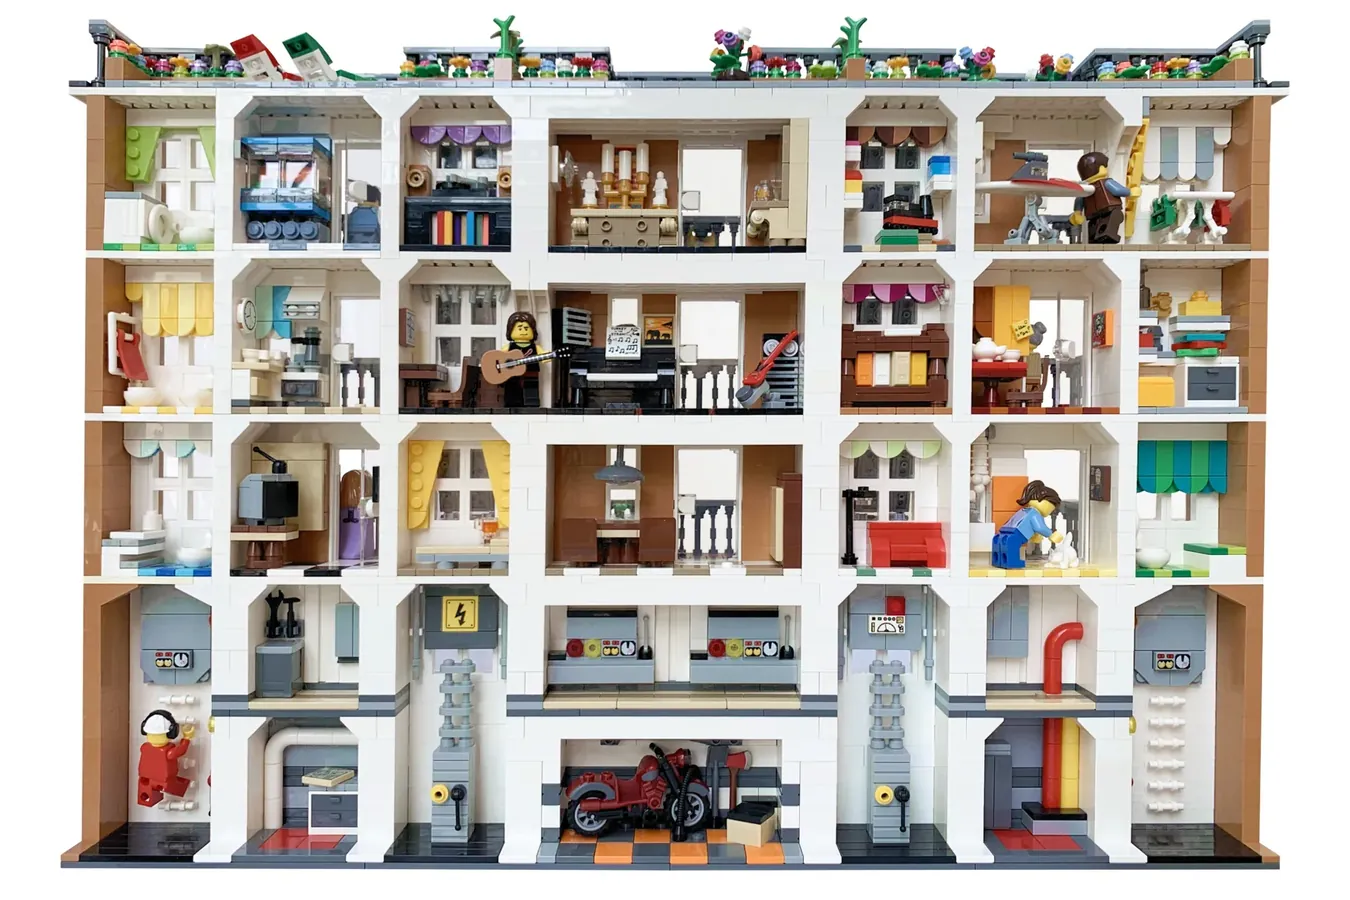  Lego (R) IDEAS 